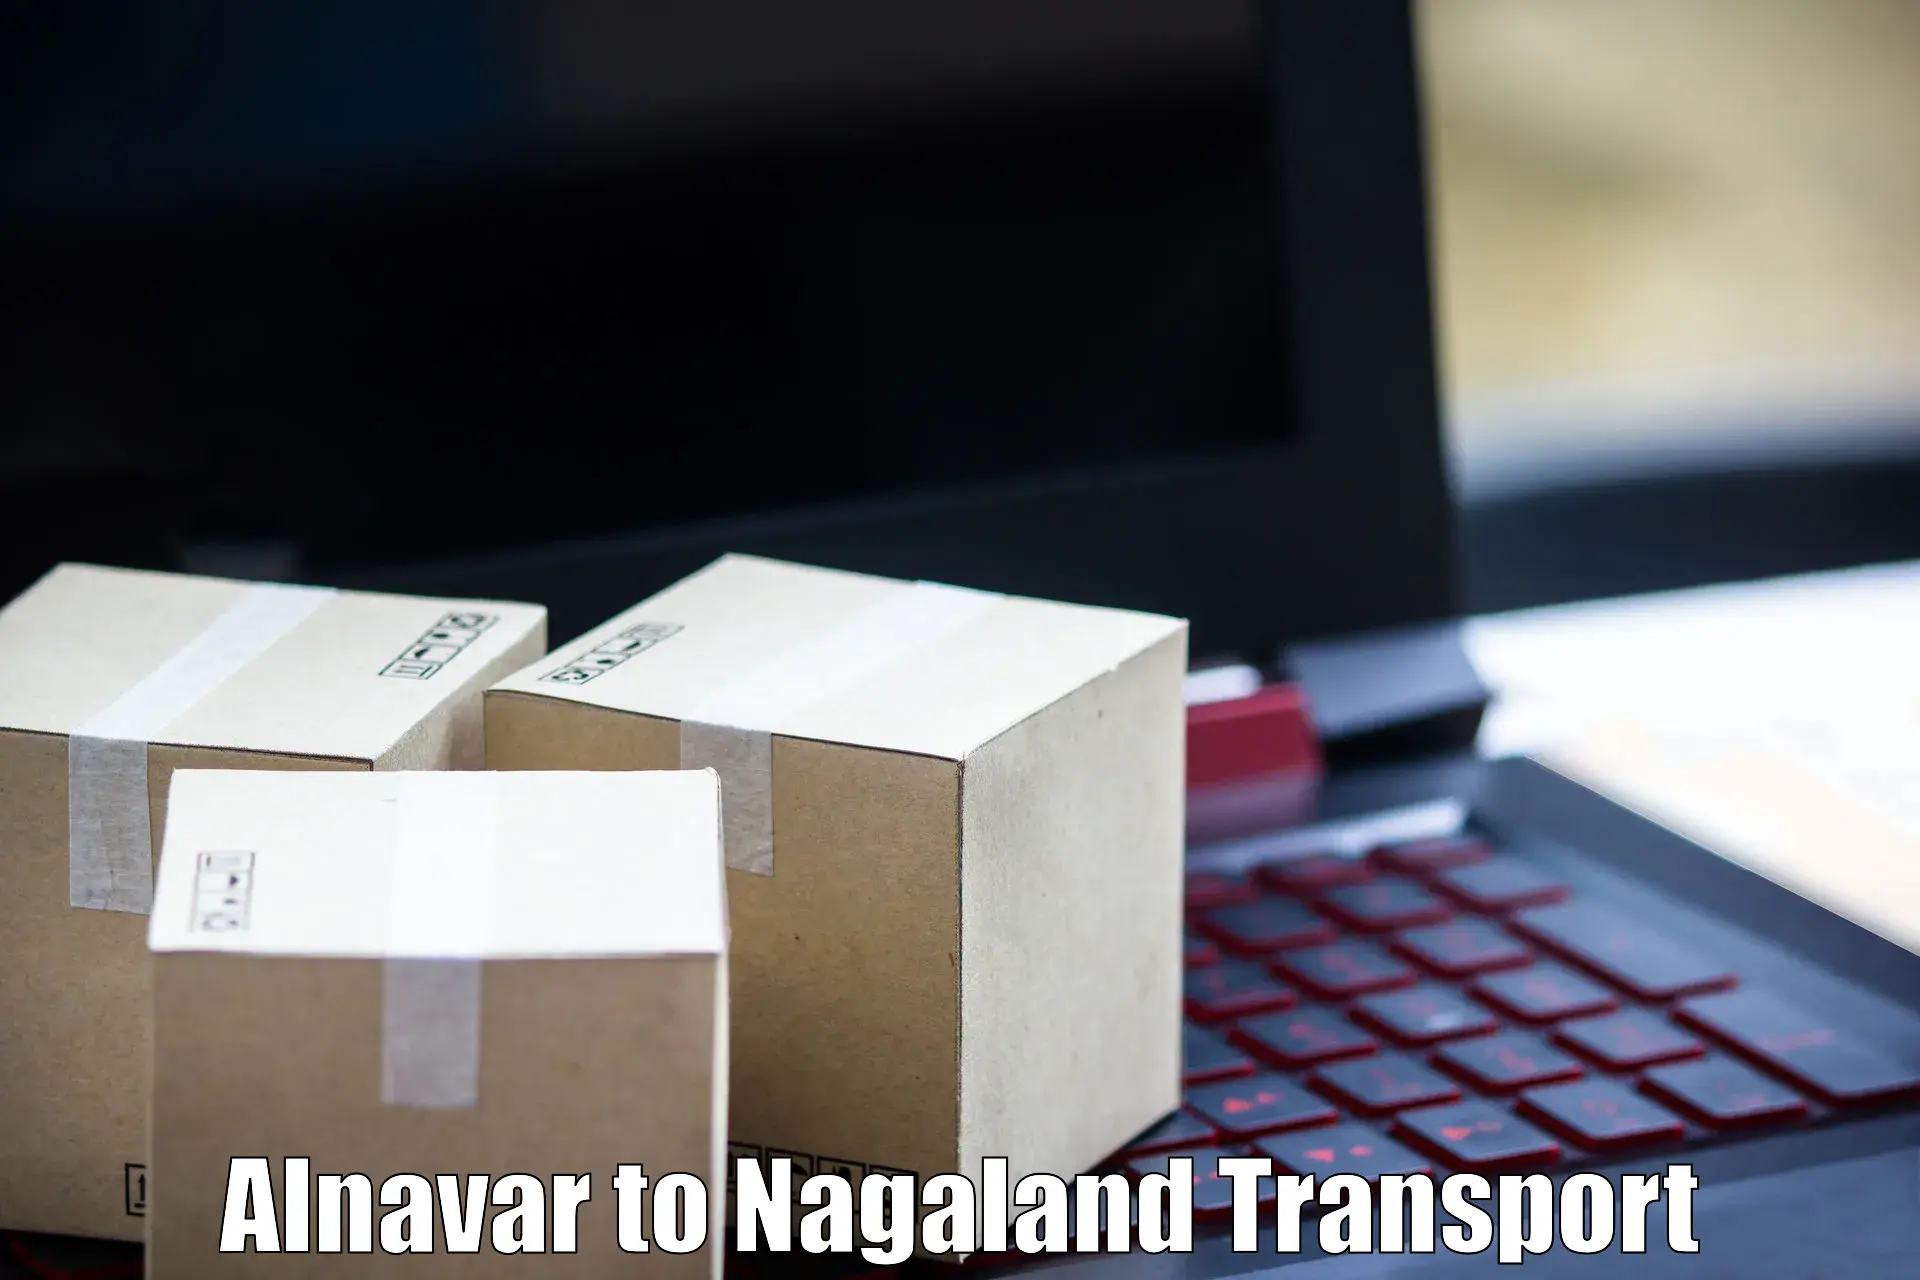 Nearest transport service Alnavar to NIT Nagaland